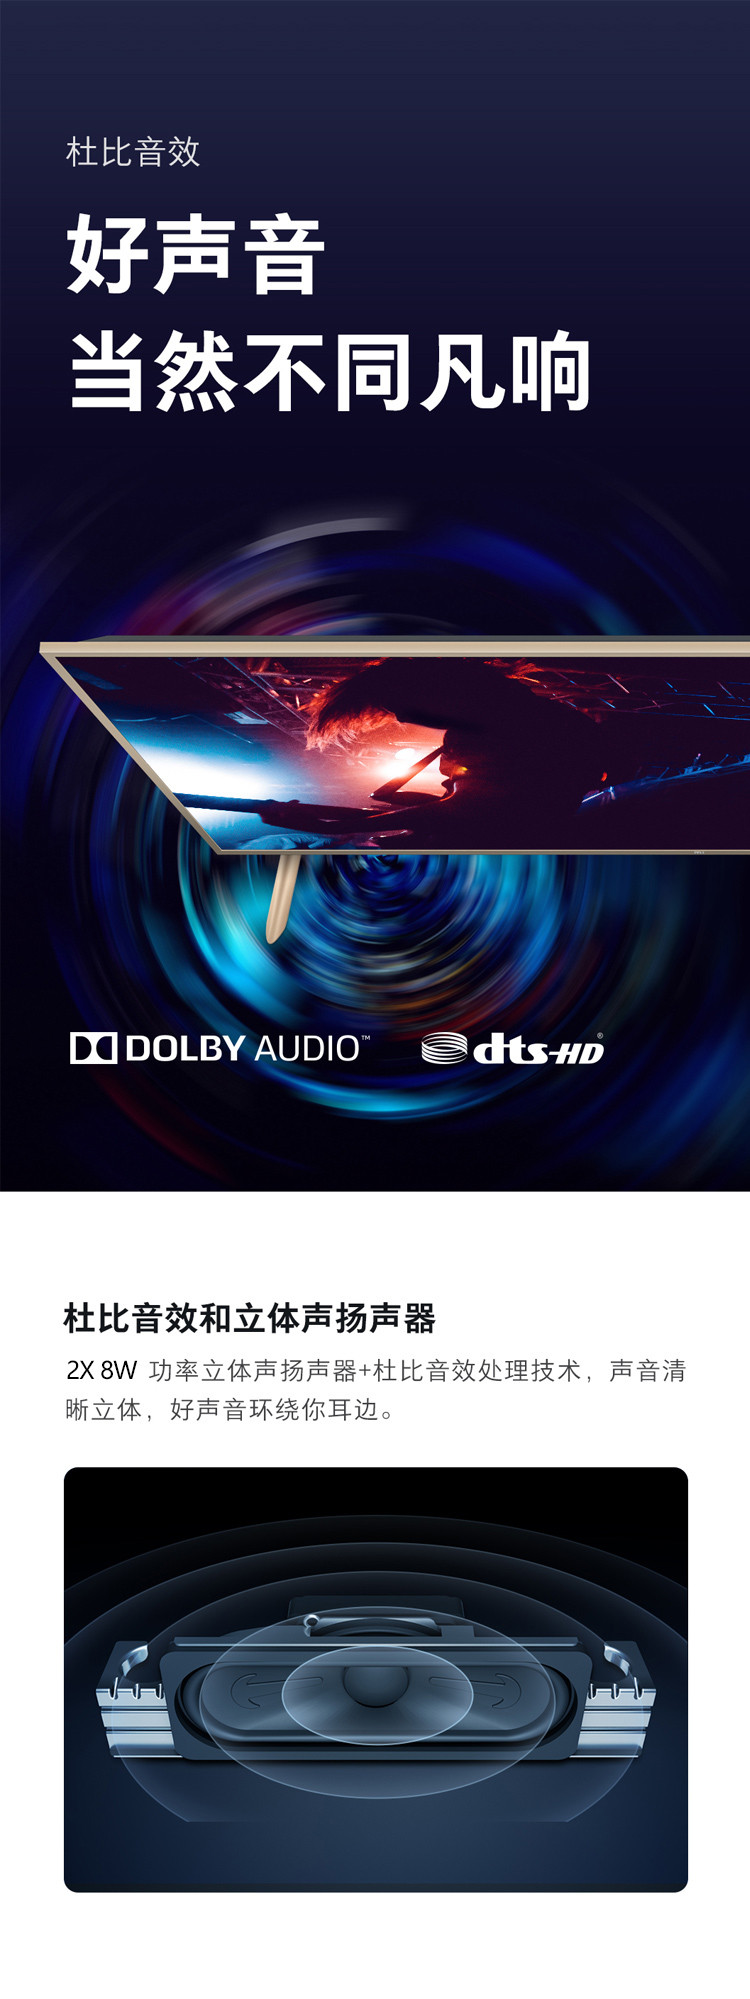 小米/MIUI 小米电视4S 65英寸Pro 人工智能语音网络液晶平板电视 2GB+16GB HDR